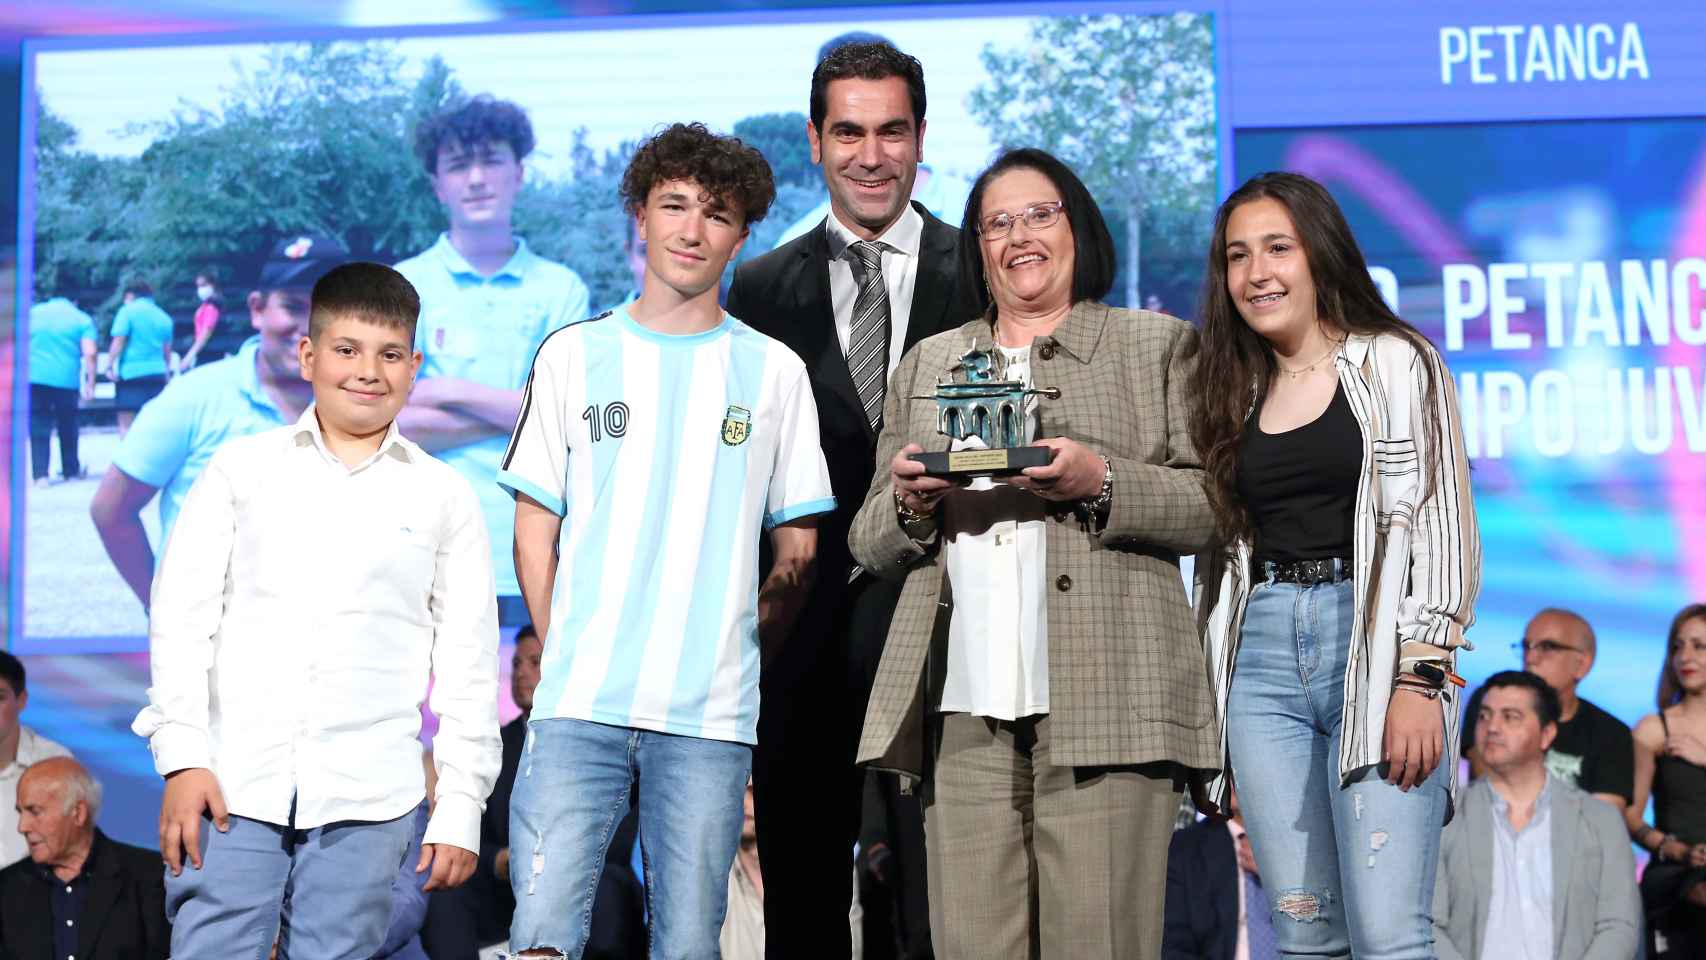 Recogida de premios en la Gala del Deporte de la Diputación de Toledo